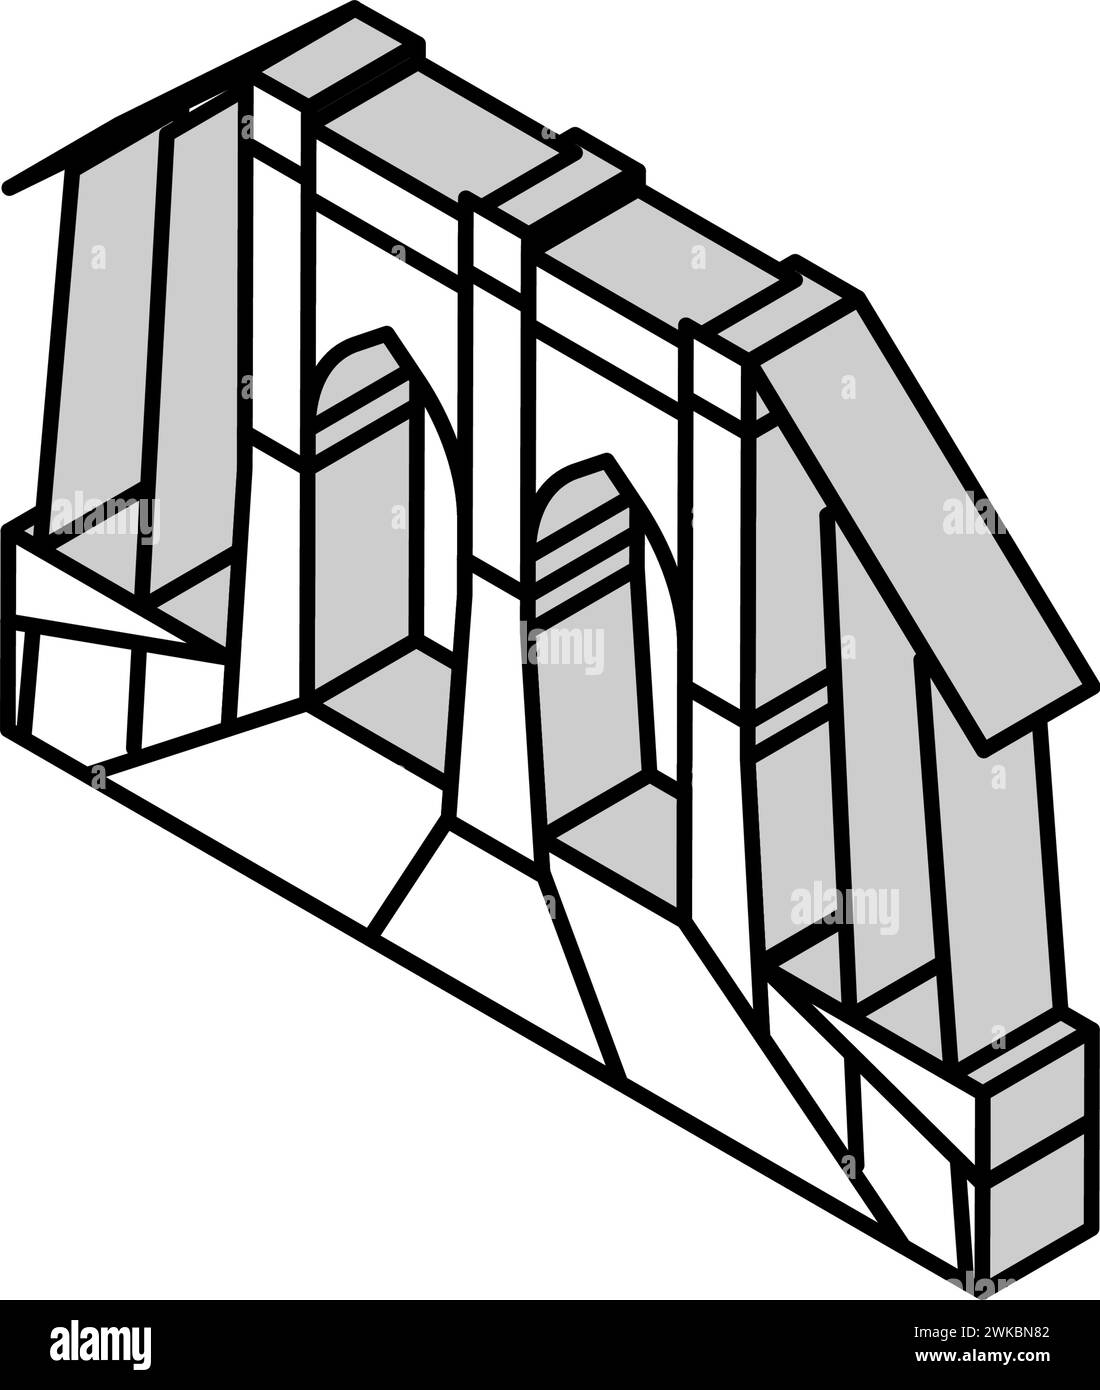 Abbildung des isometrischen Symbols der brooklyn-Brücke Stock Vektor